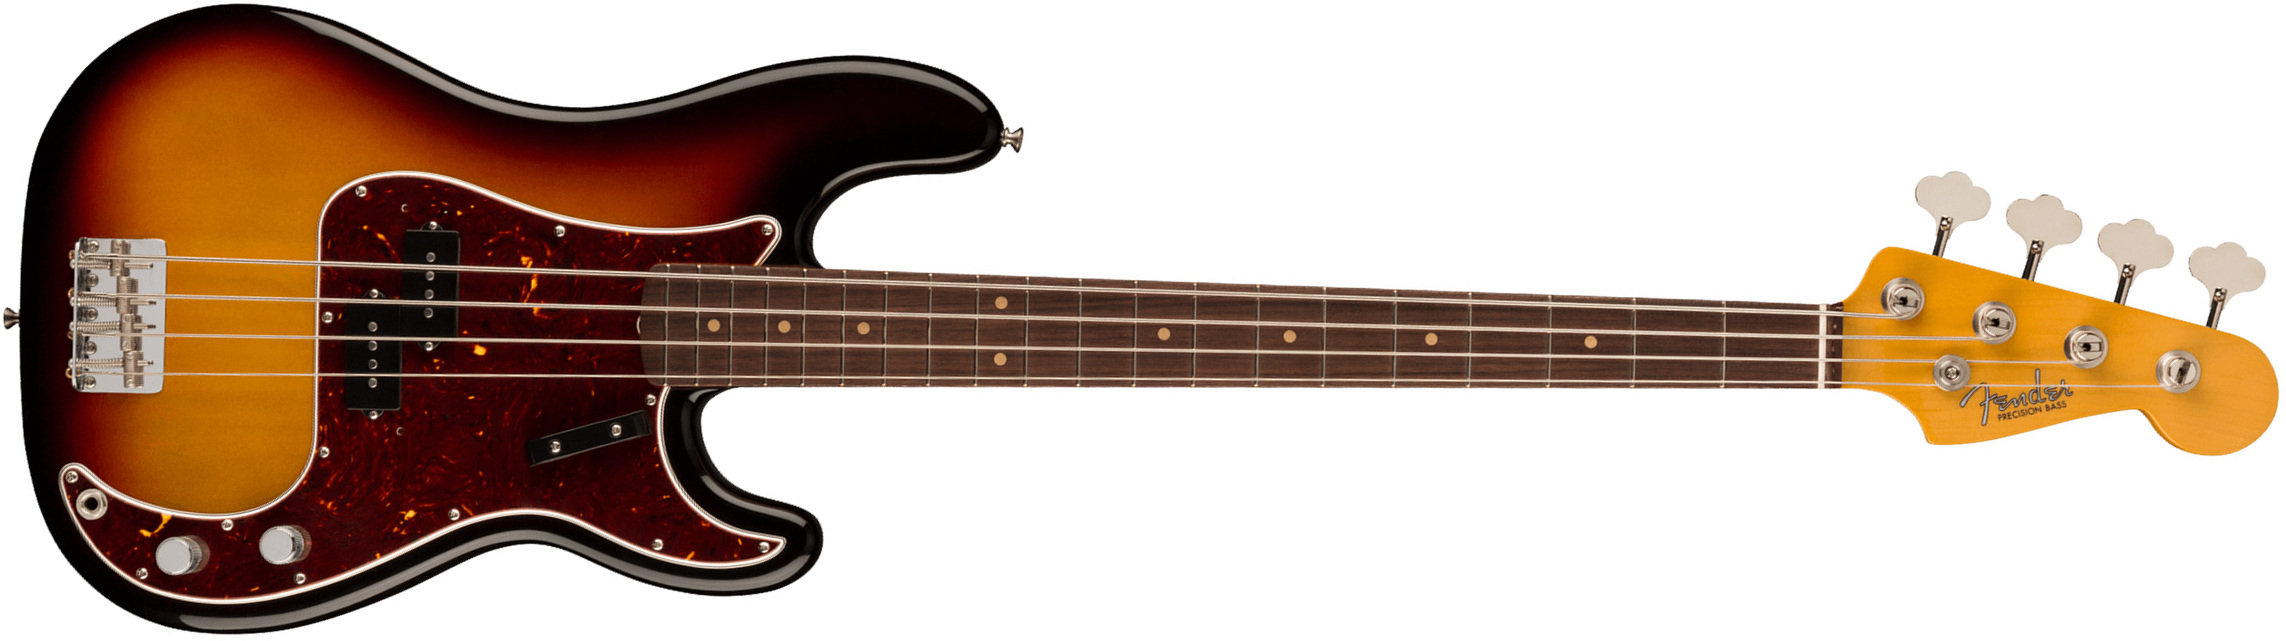 Fender Precision Bass 1960 American Vintage Ii Usa Rw - 3-color Sunburst - Basse Électrique Solid Body - Main picture